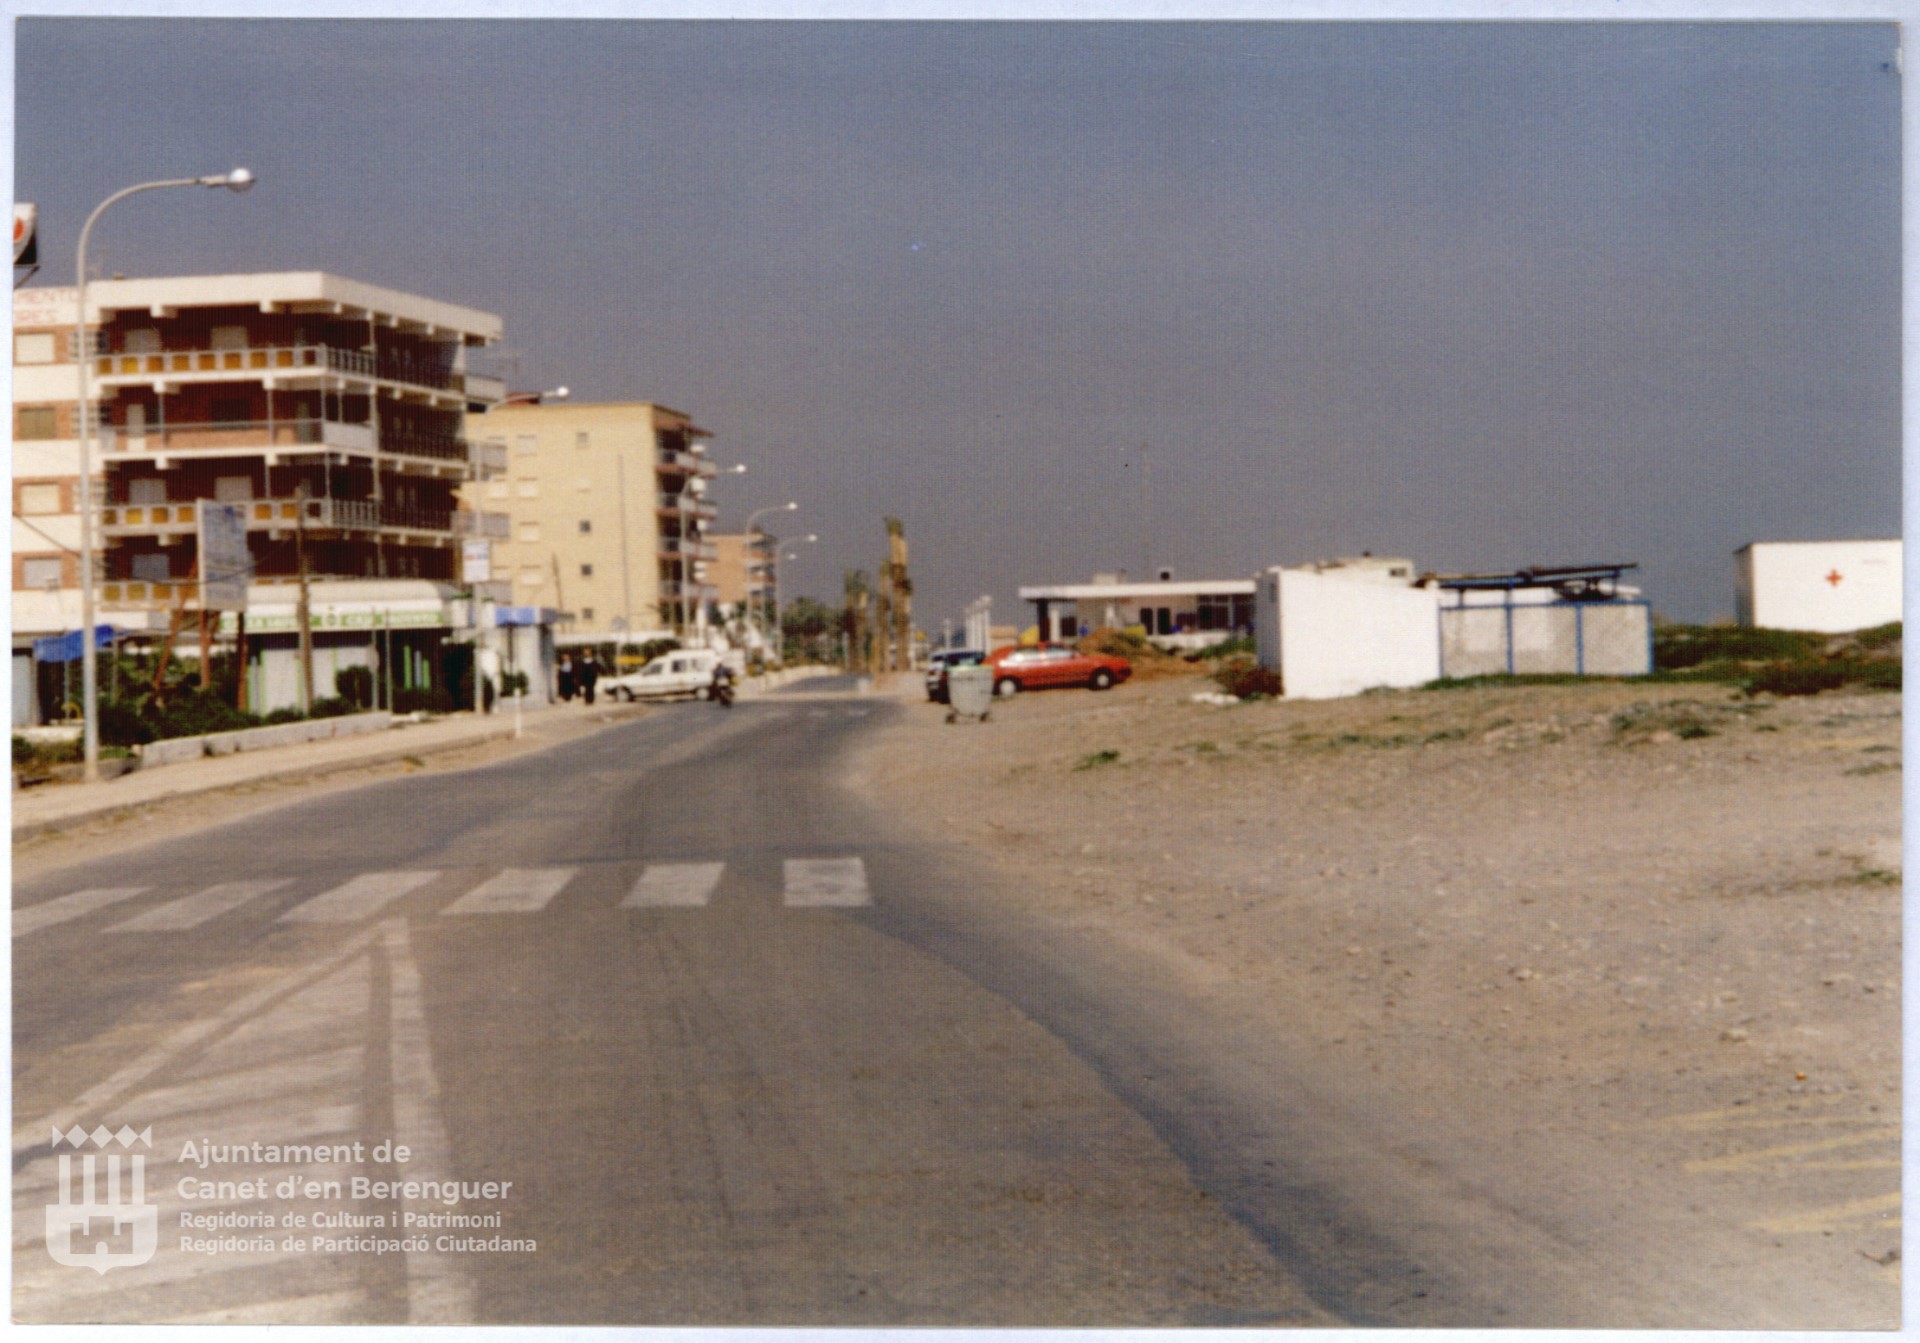 Antiga carretera platja Canet d'en Berenguer